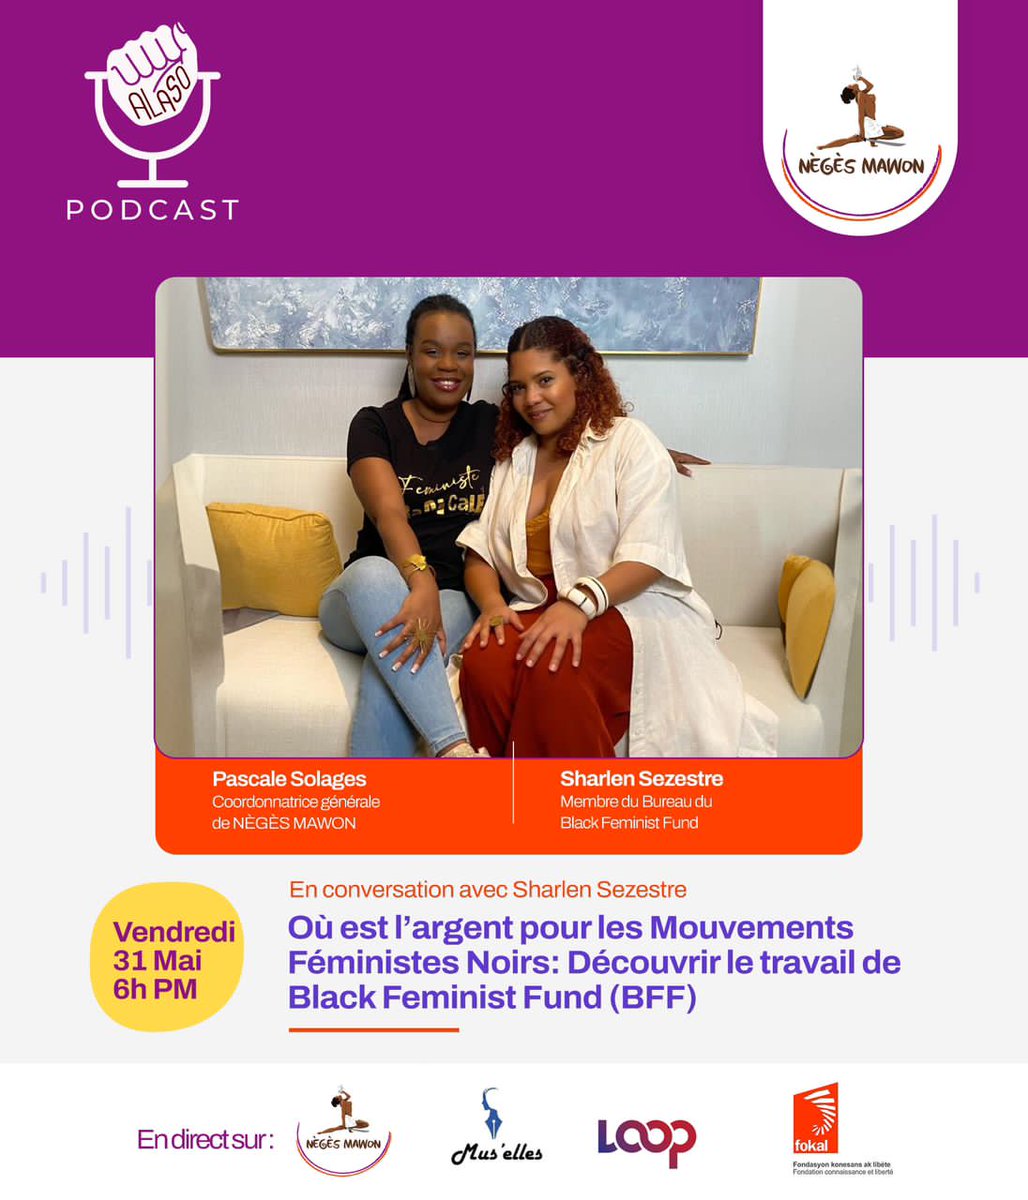 Nous vous invitons à regarder le podcast ALASO sur notre page FACEBOOK et celles de nos partenaires: FOKAL, Loop Haiti, et Mus'Elles. Rendez-vous vendredi 31 Mai, à 6h PM pour découvrir le travail de Black Feminist Fund!!!😊😎